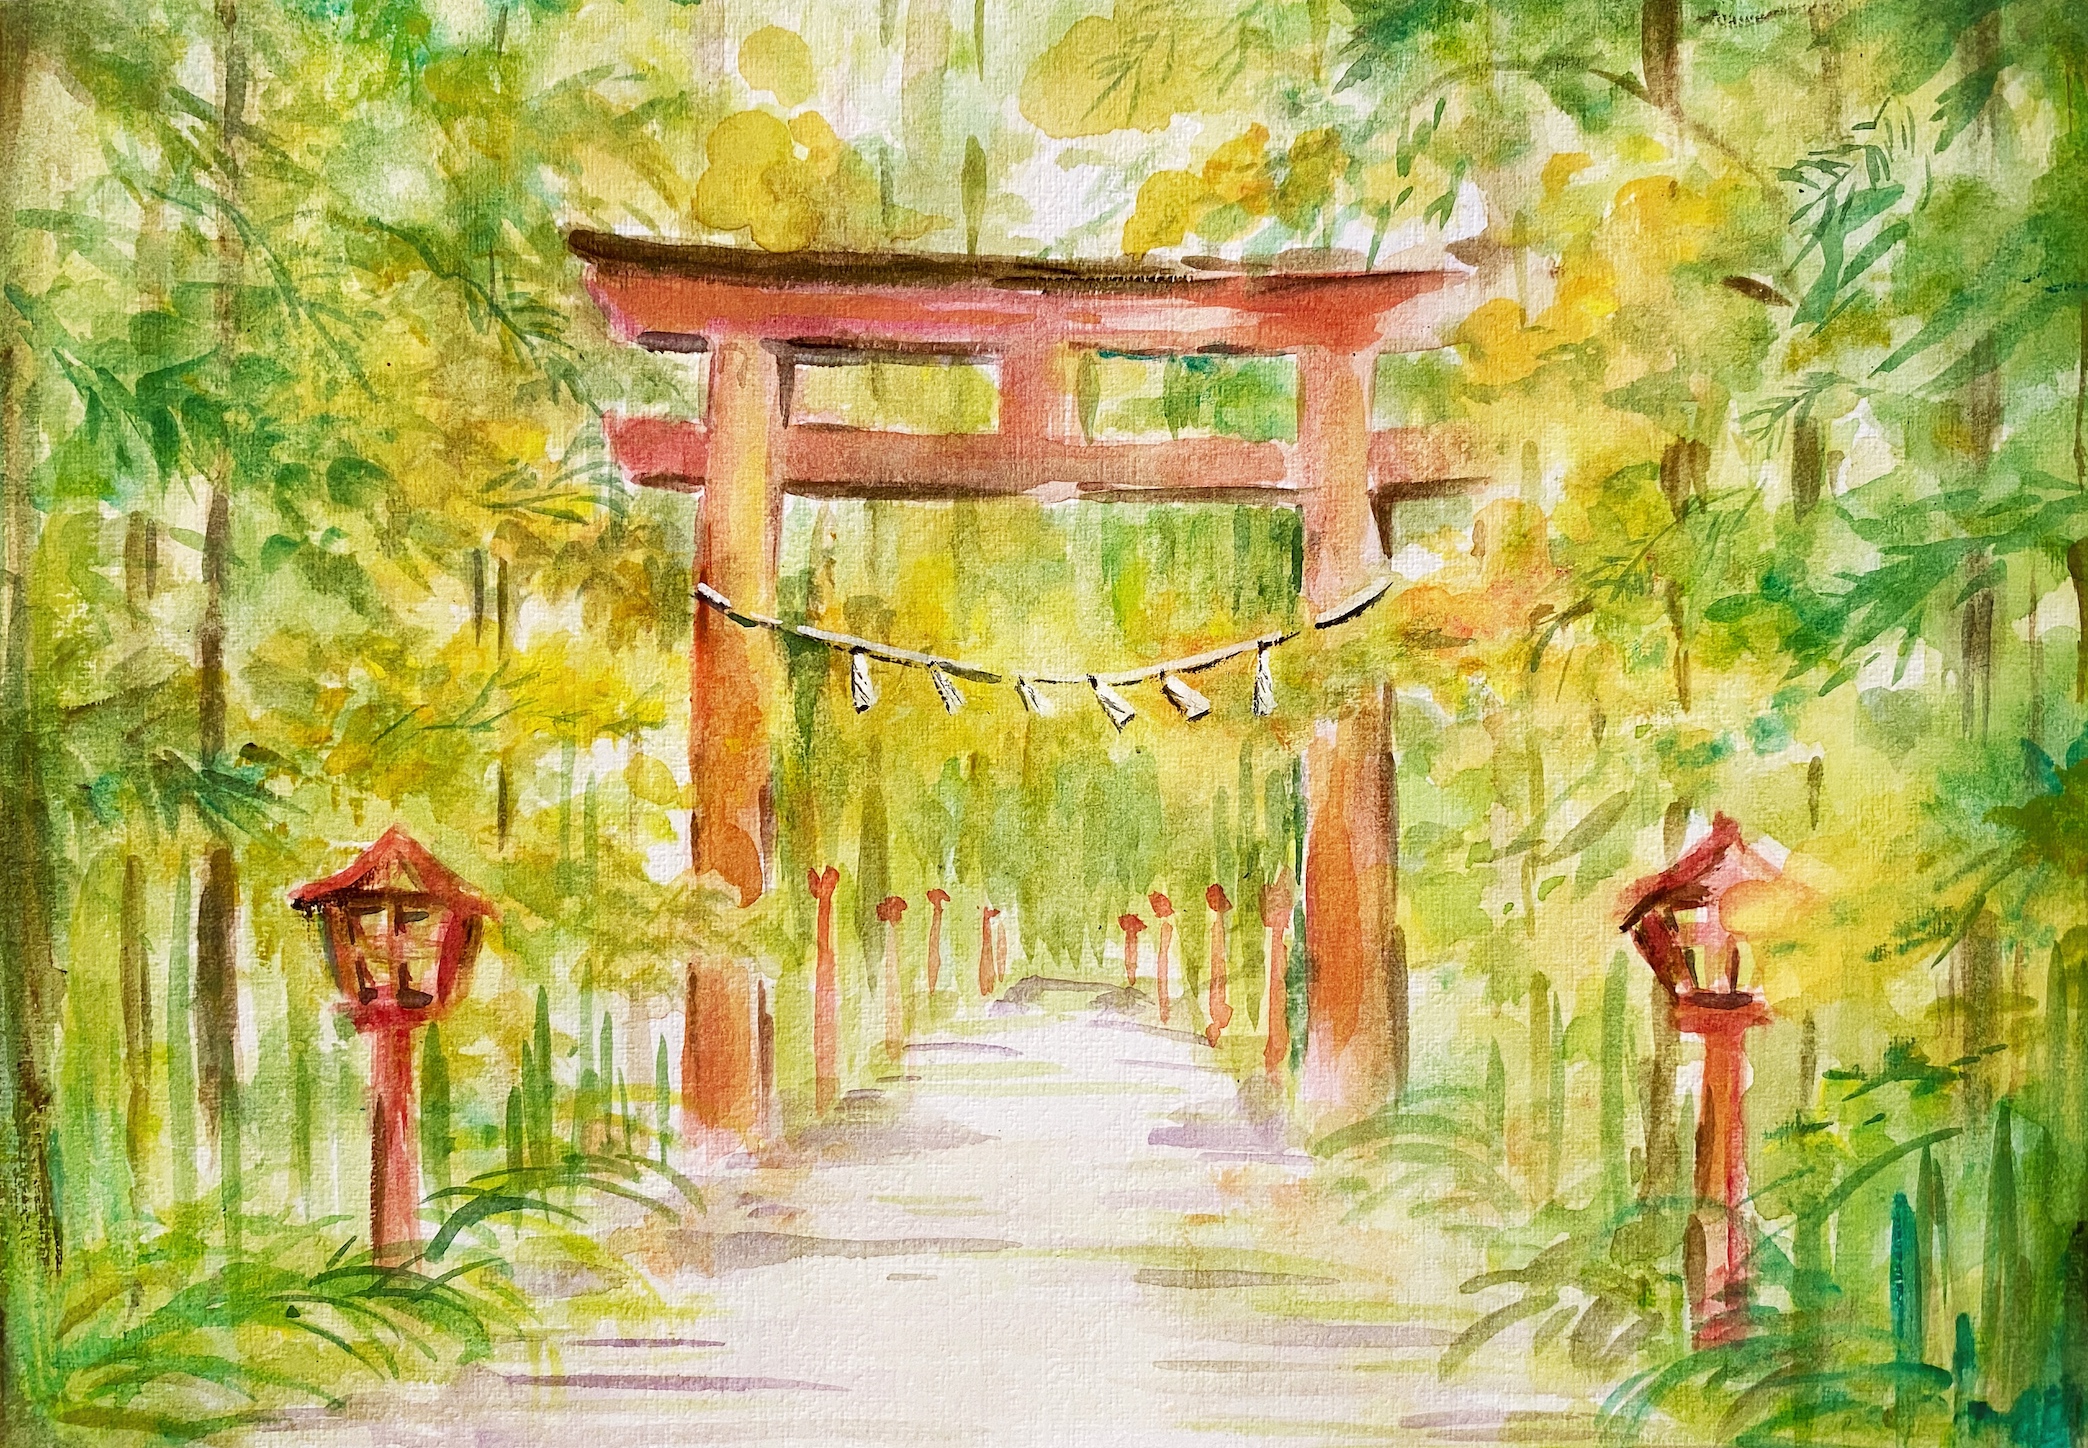 水彩絵 公園の鳥居 Watercolor Torii In The Park Artbar Tokyo Paint And Wine Art Studio Let Your Creativity And The Wine Flow